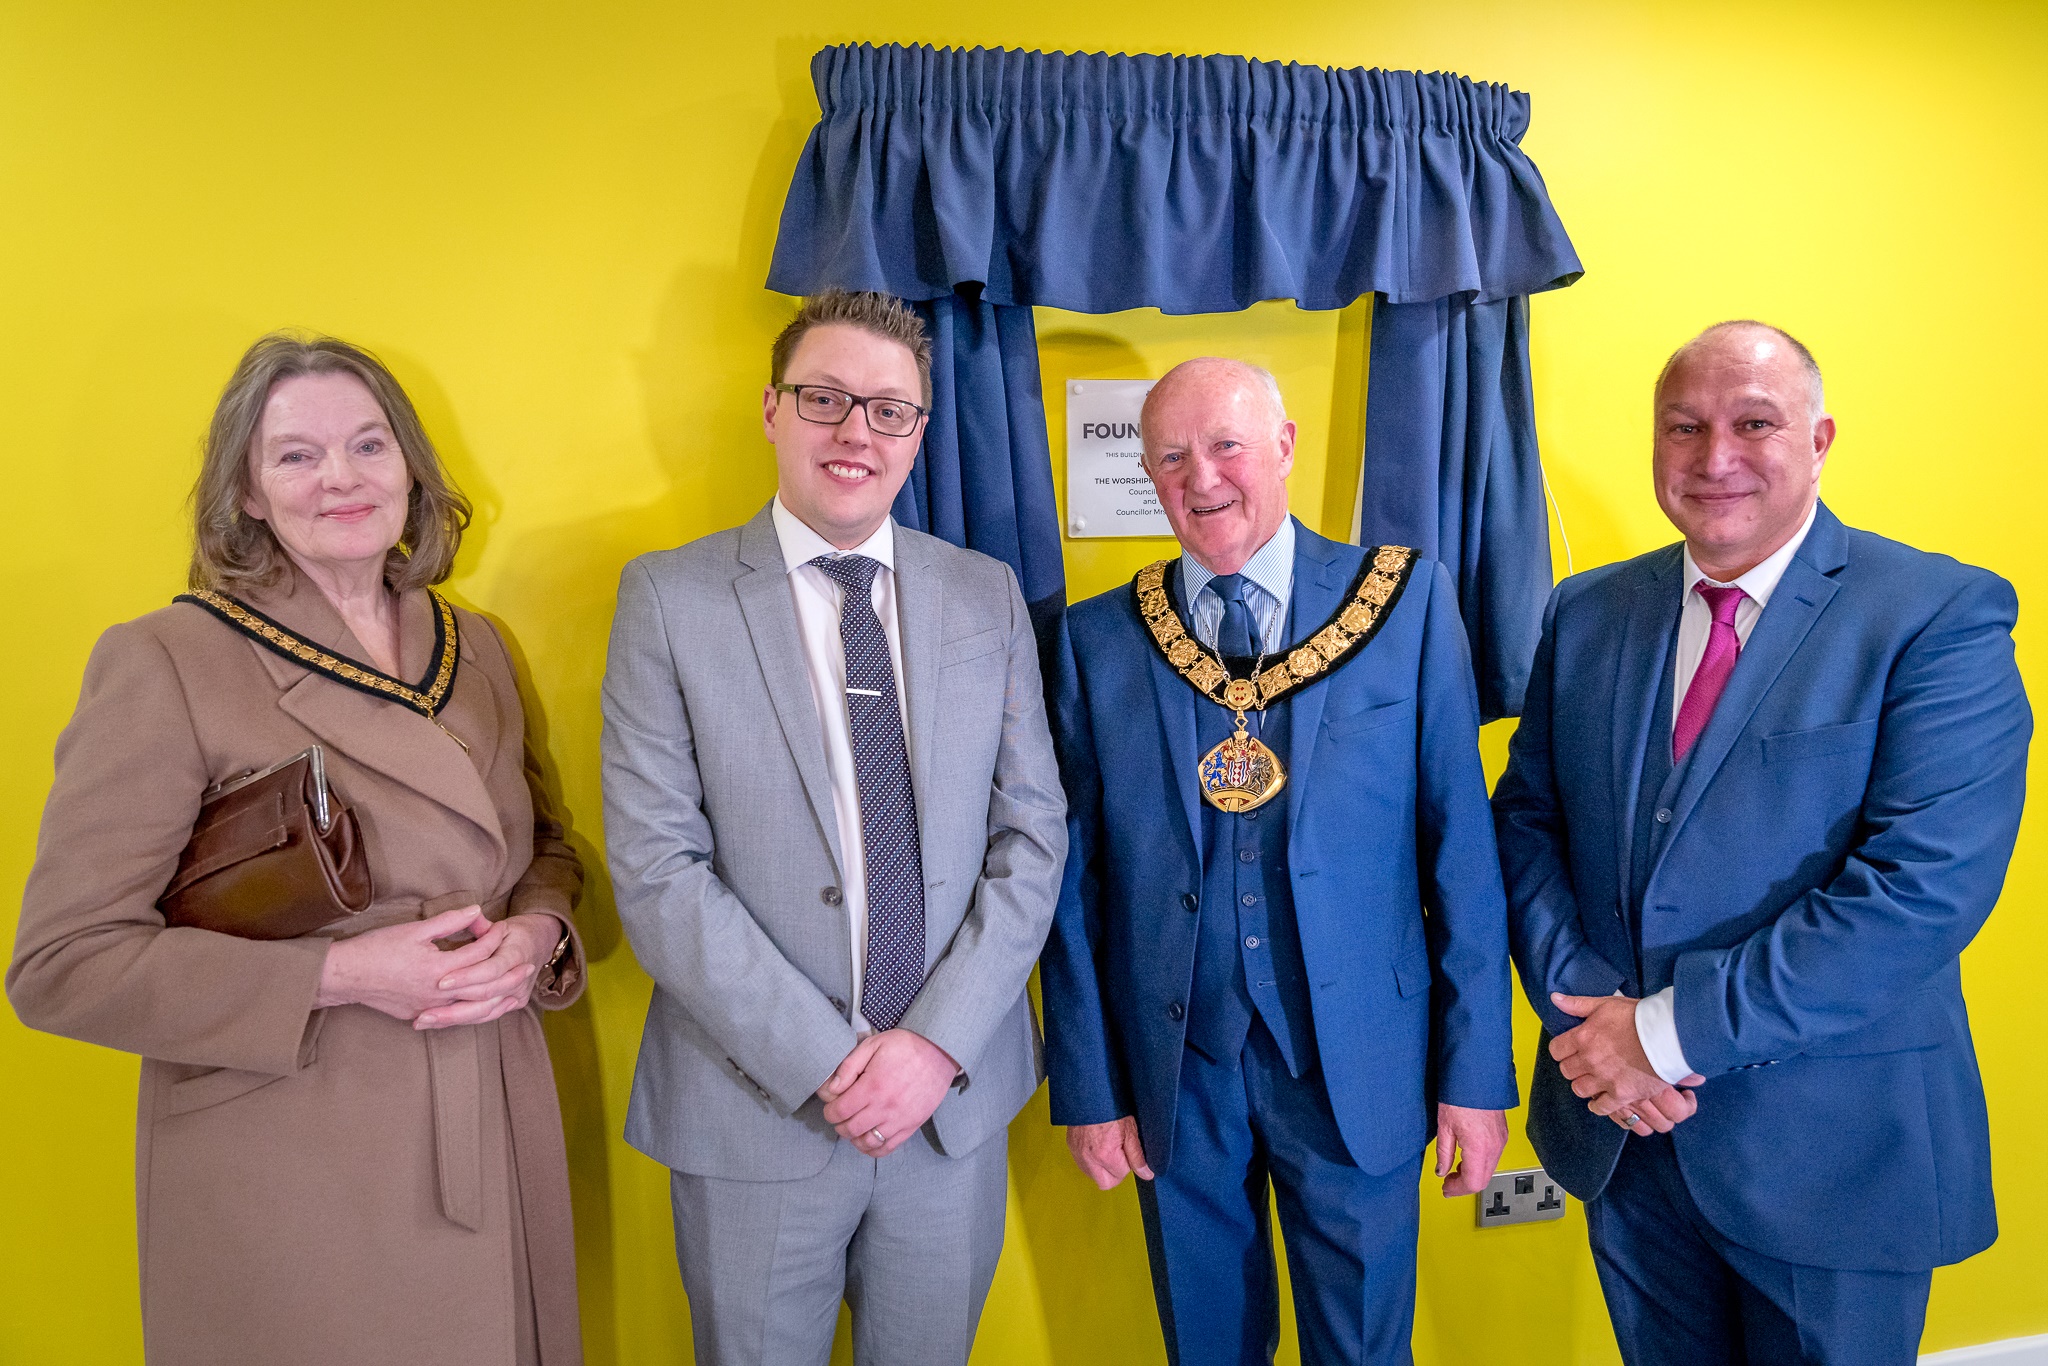 New office block near Mersey Gateway opened by Mayor